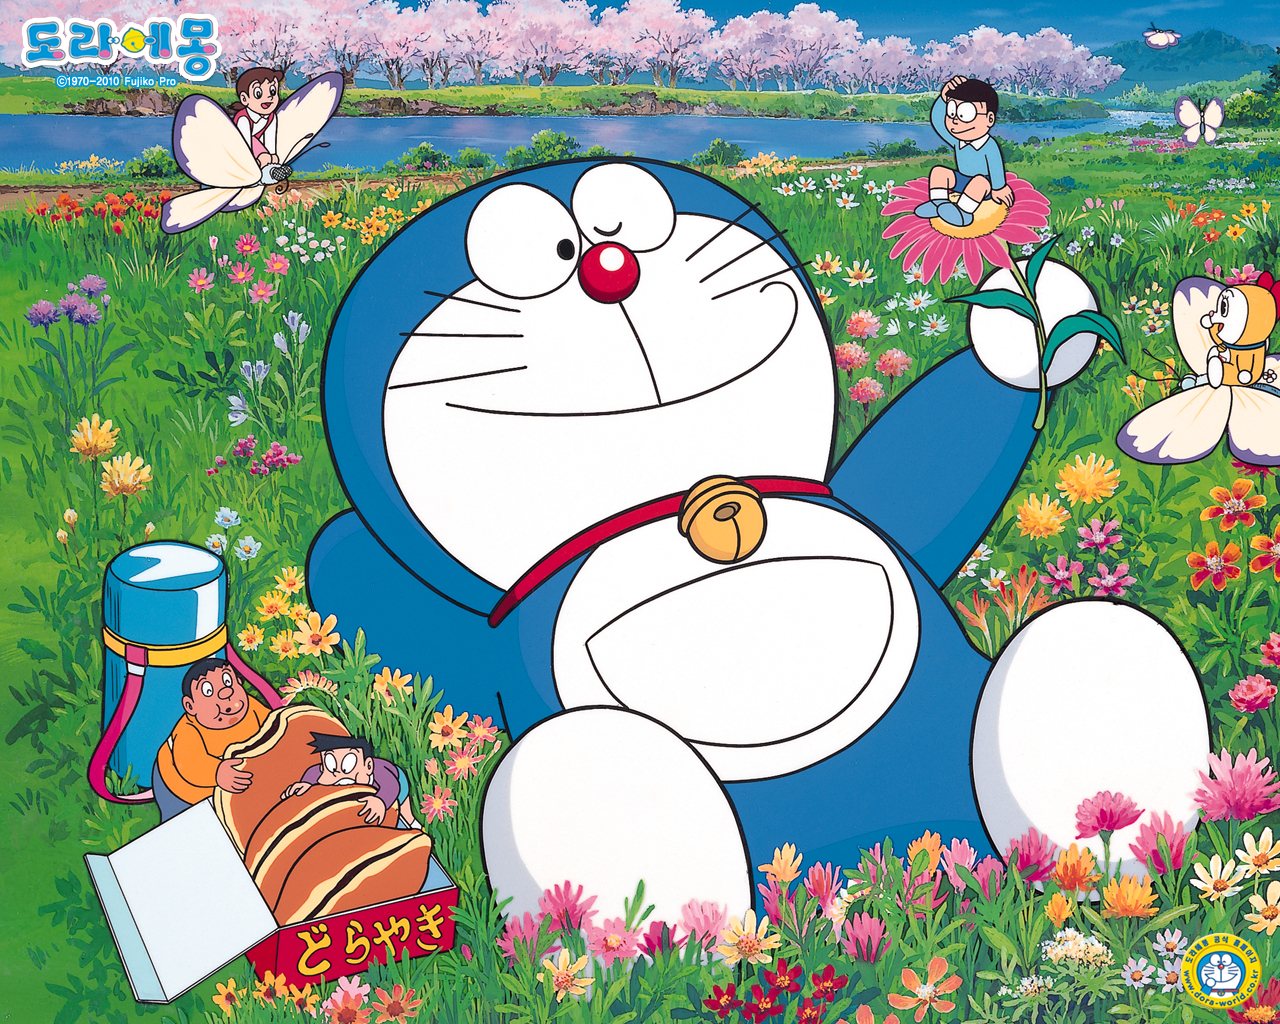 Những hình nền Doraemon đầy ngộ nghĩnh và đáng yêu, chắc chắn sẽ khiến bạn phải đắm say. Truy cập ngay để khám phá và tải về những bộ sưu tập hình nền Doraemon độc đáo và đầy màu sắc.